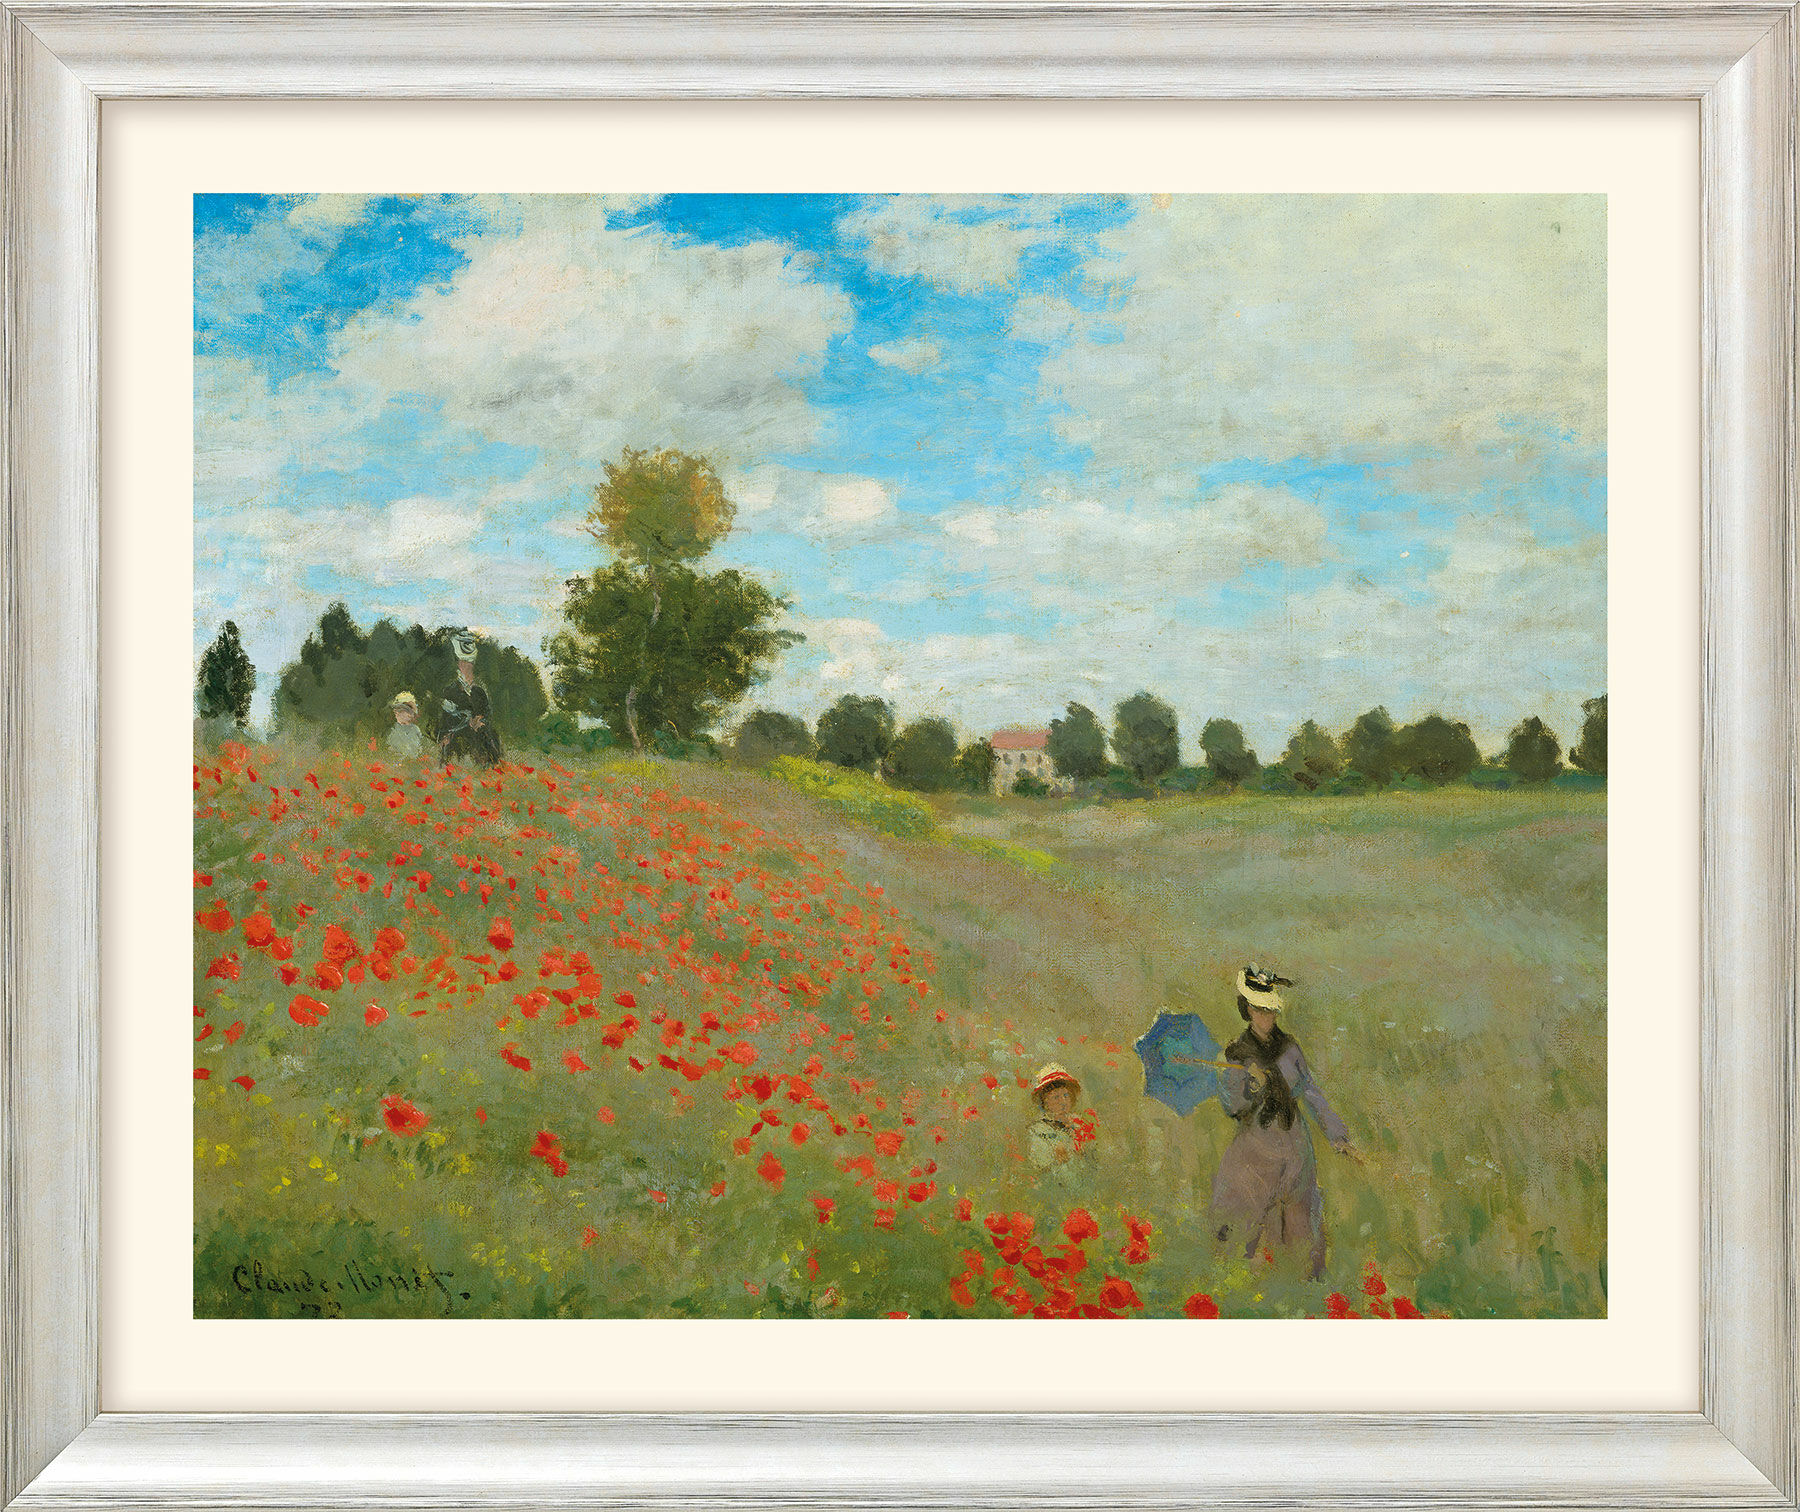 Bild "Les coquelicots à Argenteuil (Das Mohnfeld bei Argenteuil)" (1873), Version silberfarben gerahmt von Claude Monet